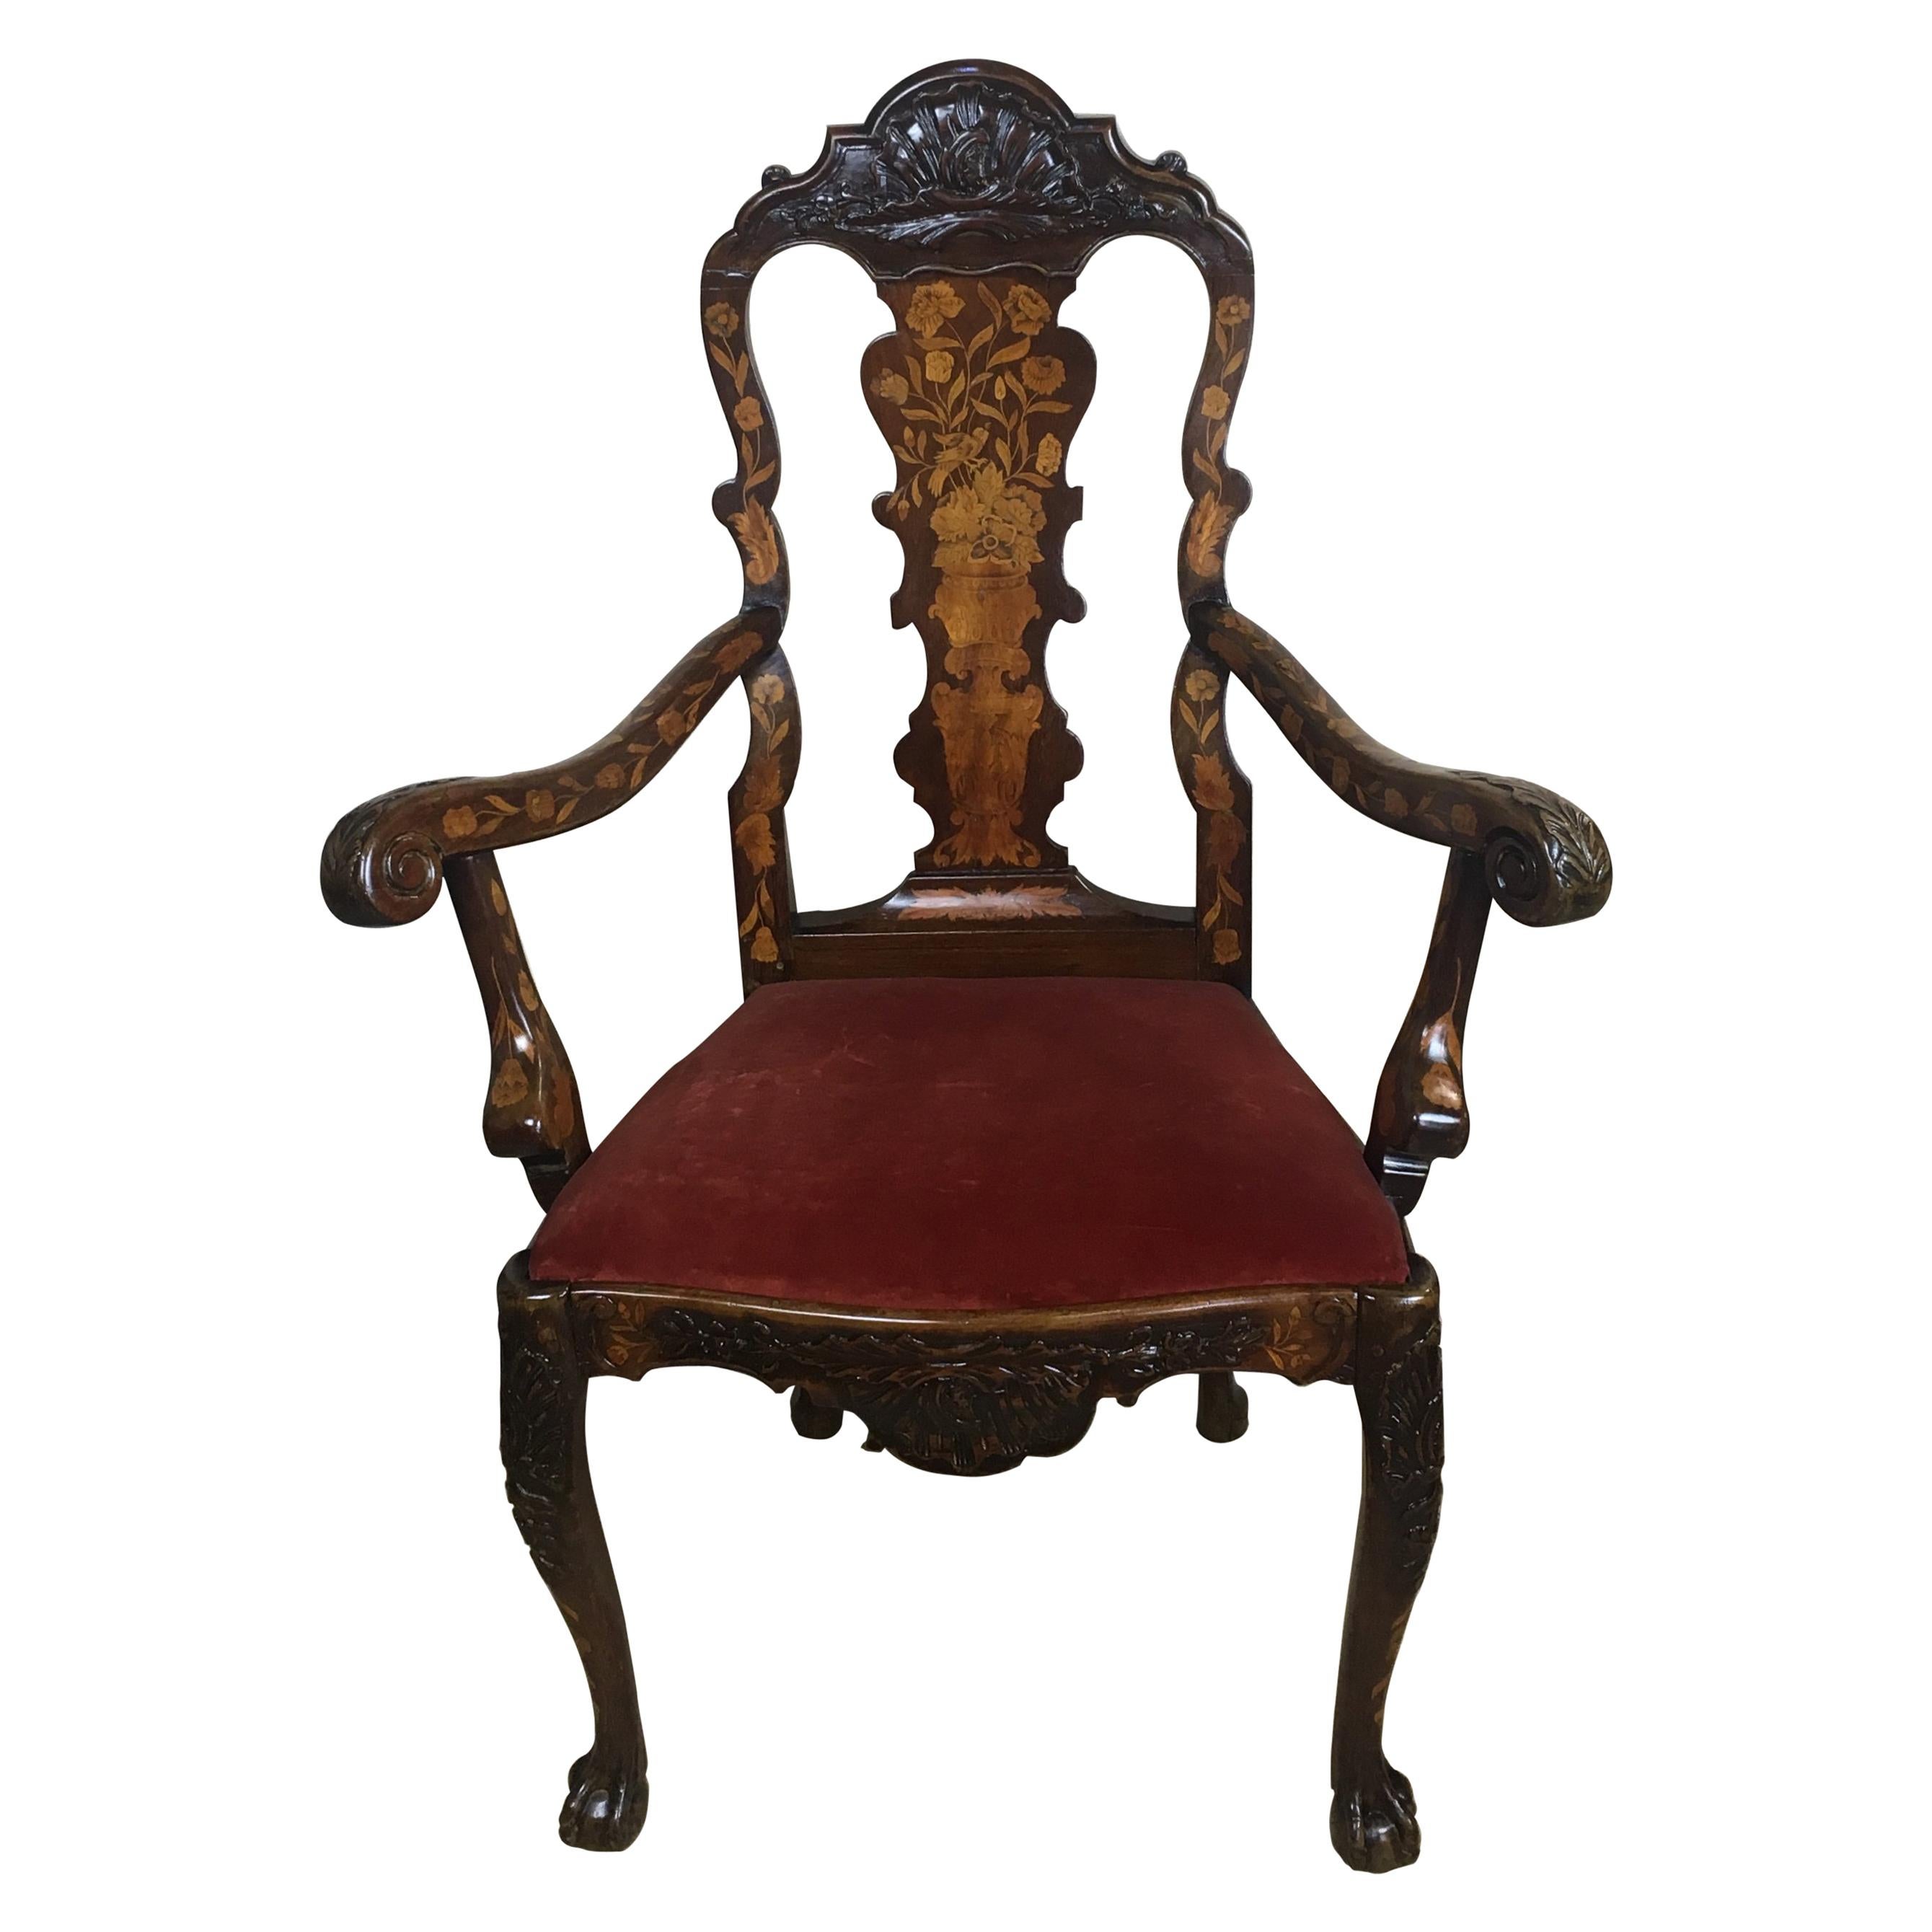 Niederländischer Sessel aus Nussbaum und Palisanderholz aus dem 18. Jahrhundert, außergewöhnliche Intarsienarbeit und Schnitzerei